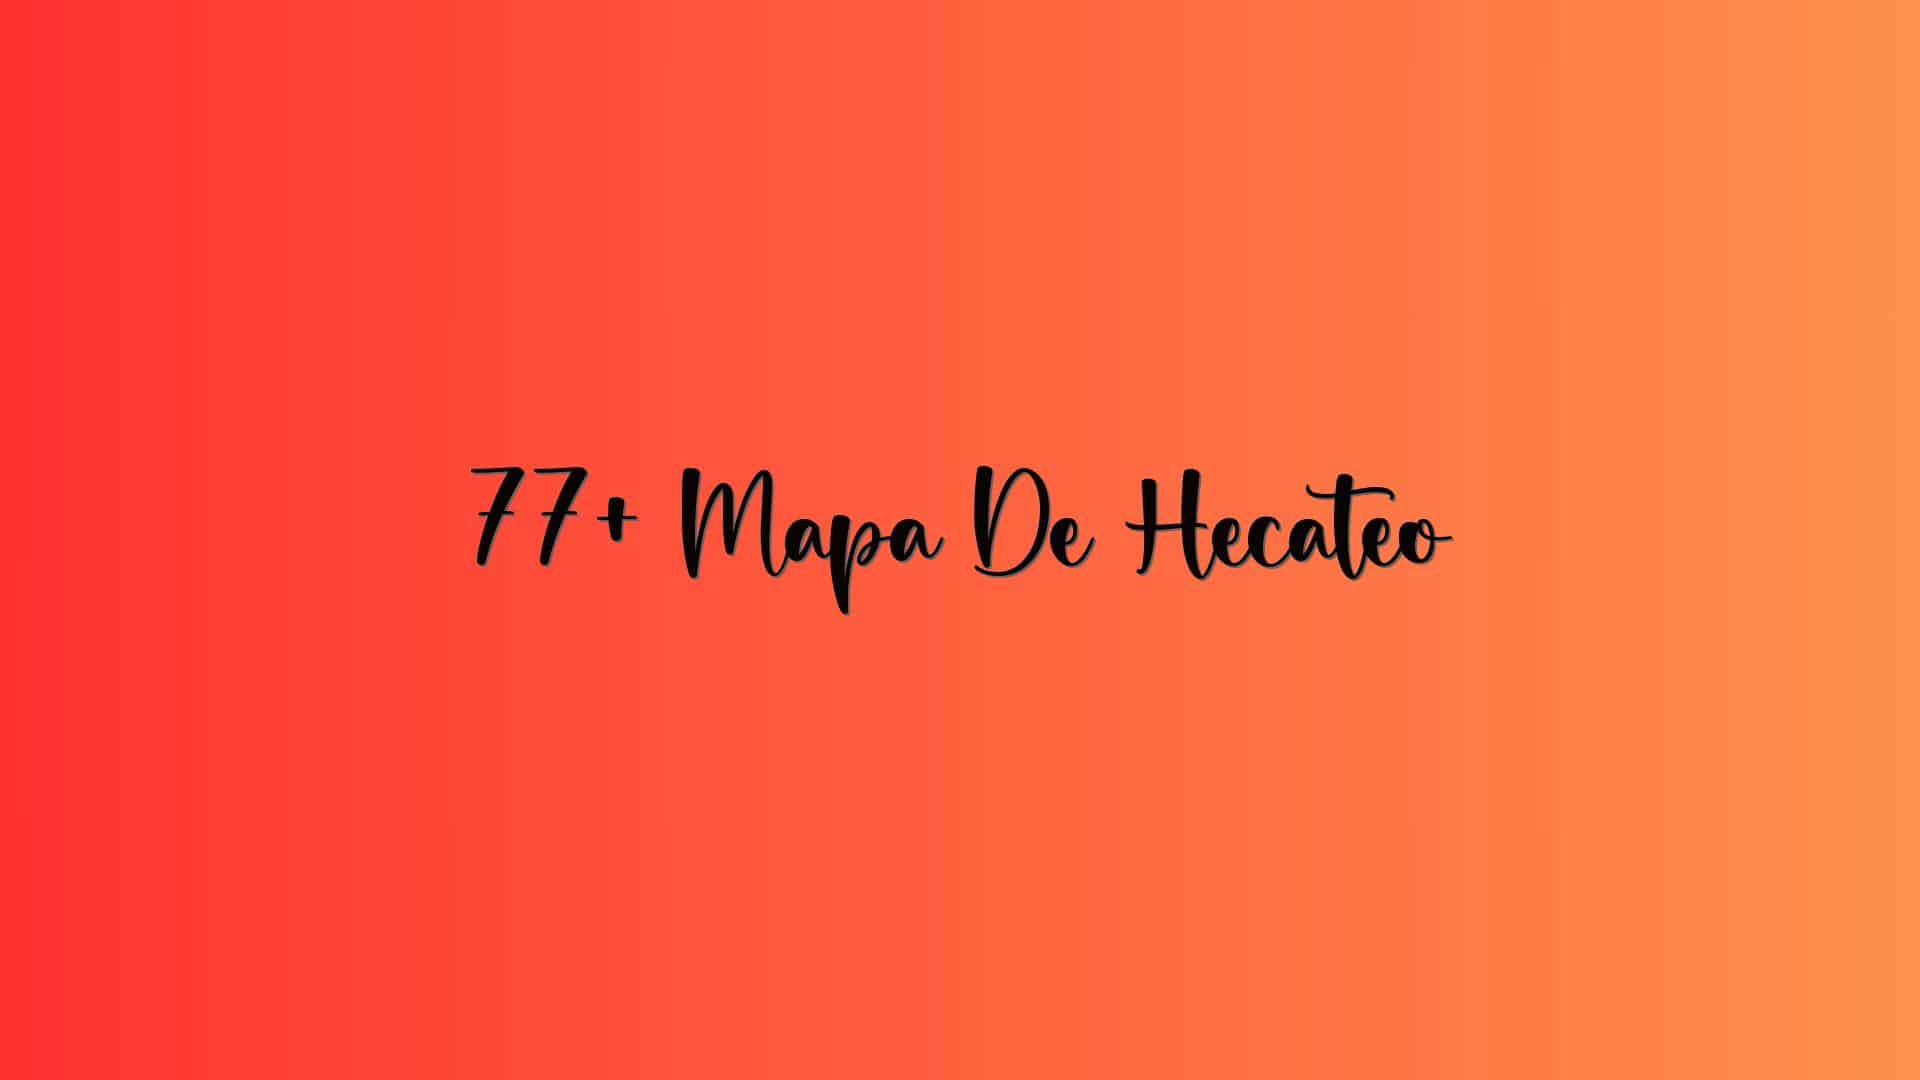 77+ Mapa De Hecateo